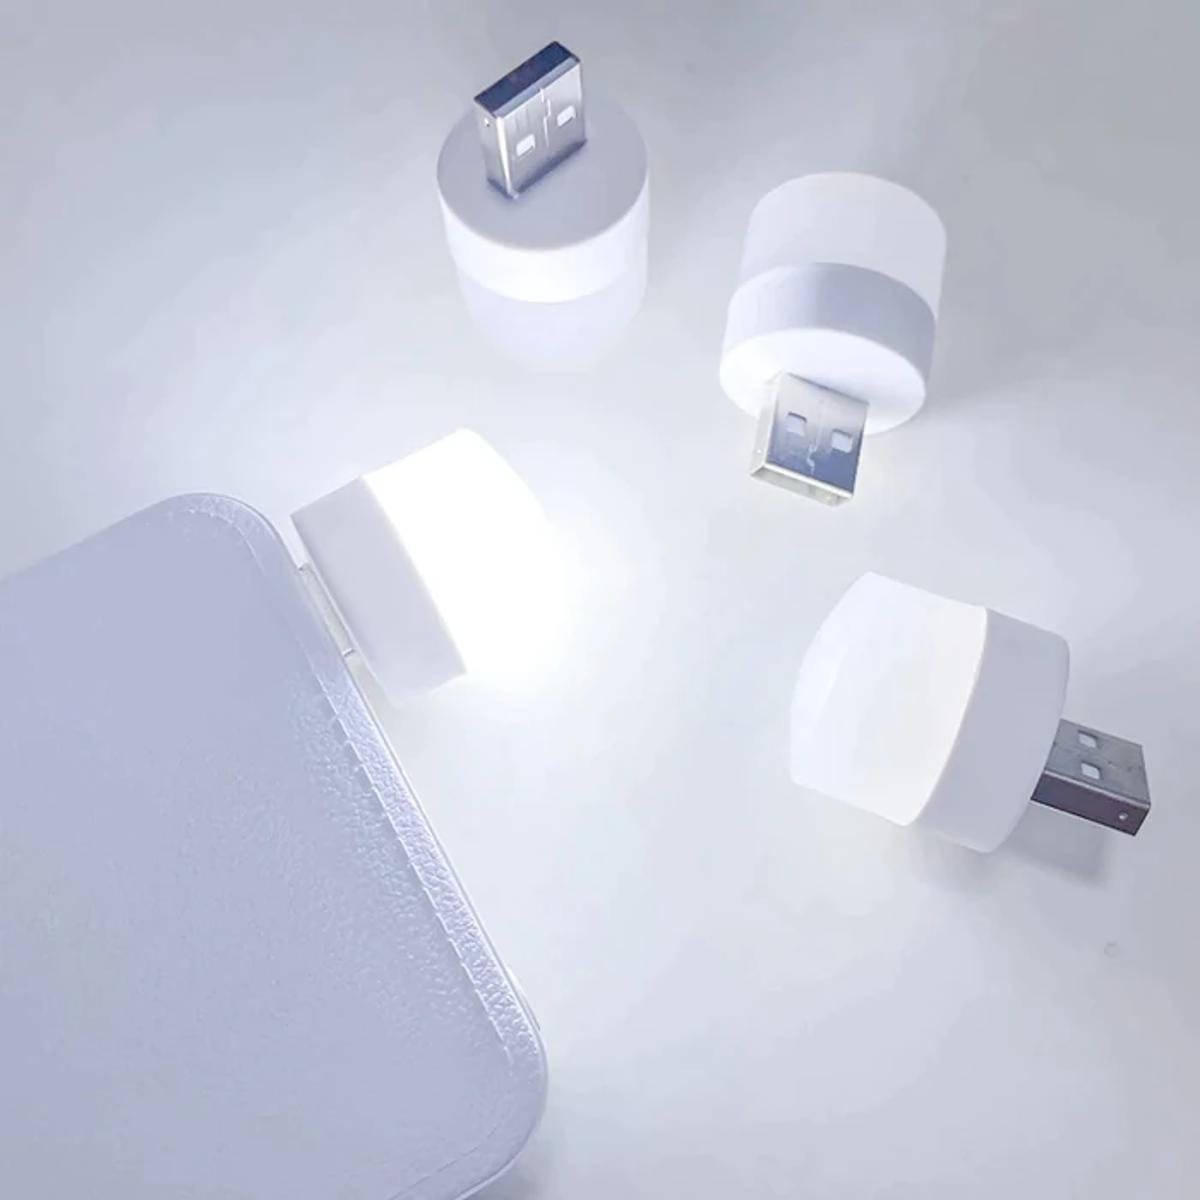 USB Bulb for Power Bank, USB led Light for Power Bank, USB Light for Mobile  Lamp/LED USB Bulb Mini LED Night Light led Portable Light - White (Pack of